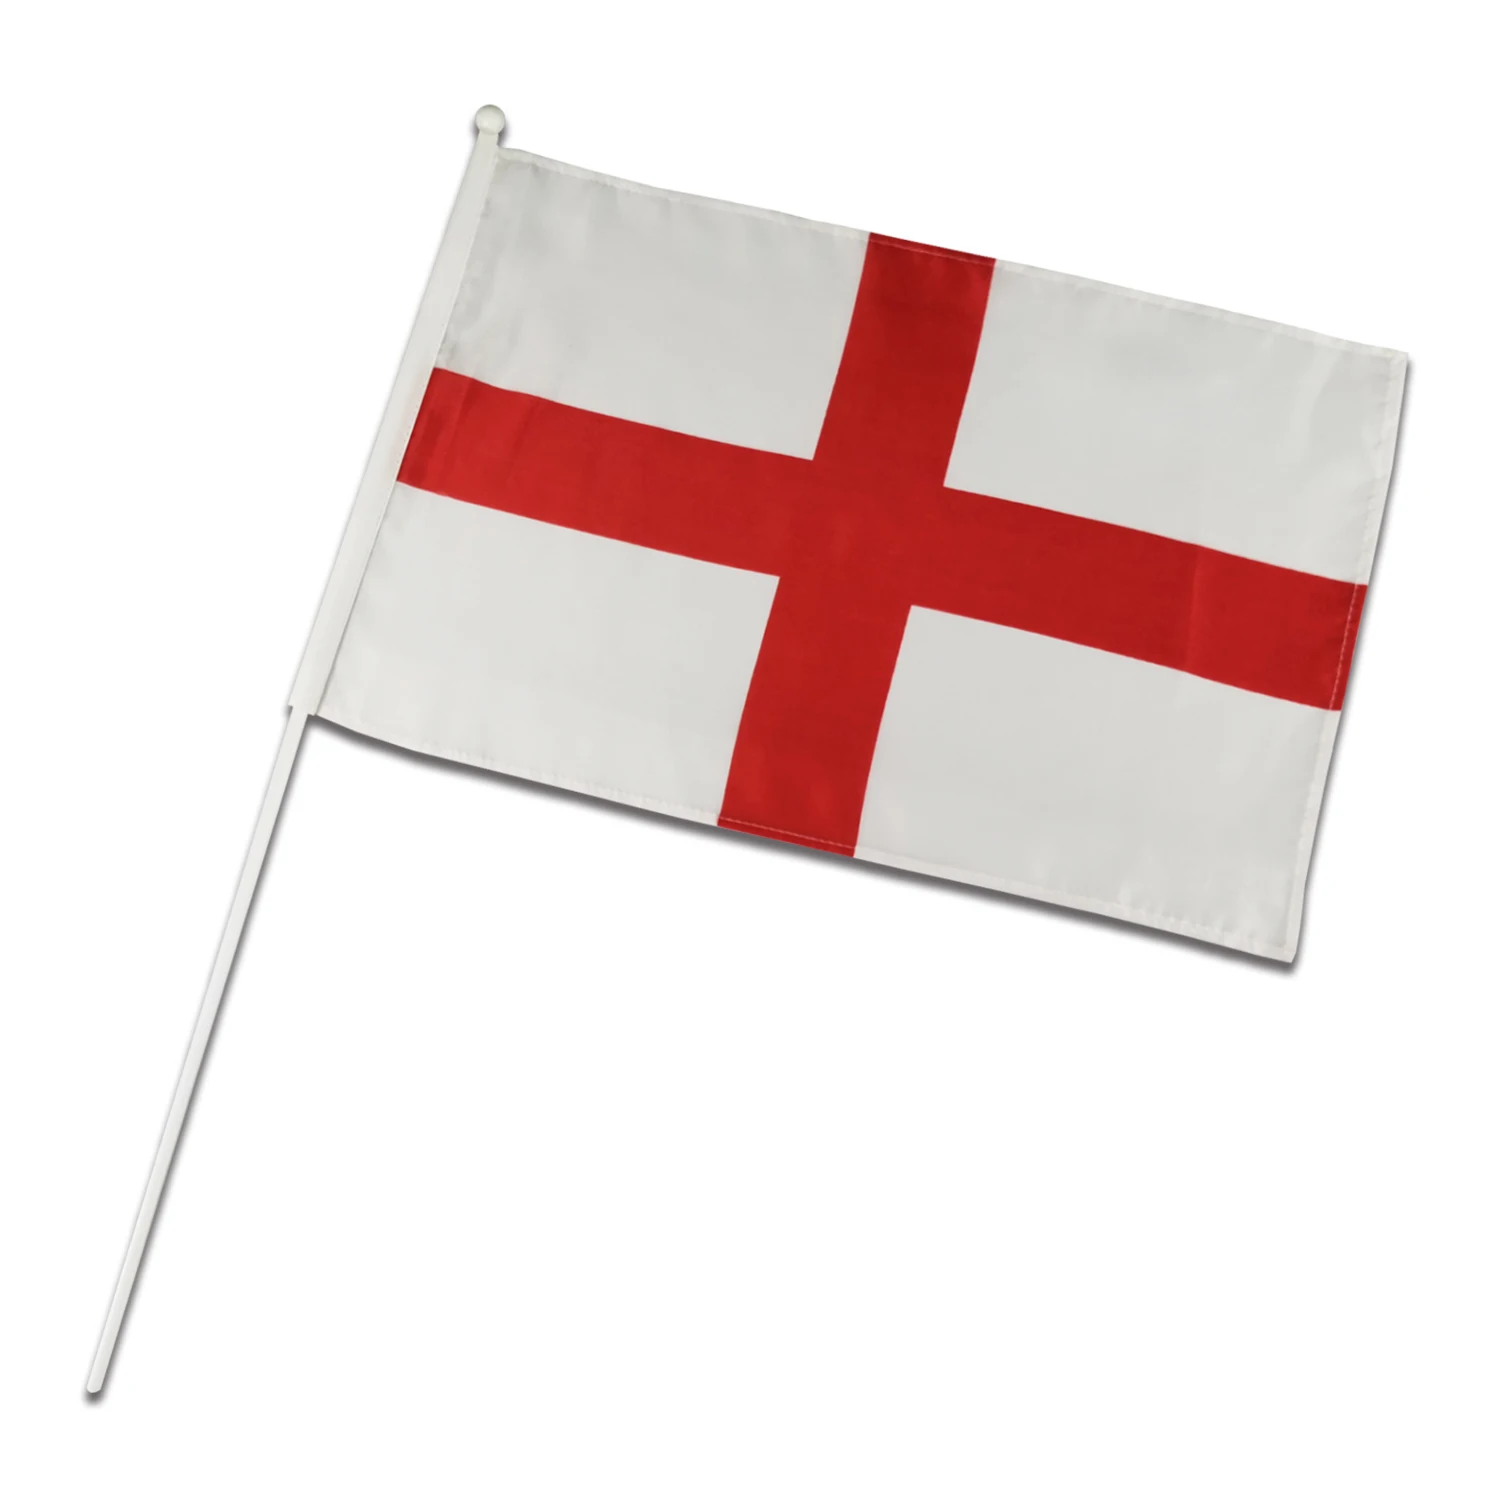 Cờ Anh tùy chỉnh đã trở thành một mặt hàng phổ biến trong cộng đồng người yêu thể thao và quốc kỳ. Chúng tôi tự hào cung cấp cho bạn những sản phẩm cờ Anh tùy chỉnh độc đáo, chất lượng cao và giá cả phải chăng. Chọn cho mình một mẫu cờ Anh tùy chỉnh yêu thích để thể hiện nét đẹp của quốc kỳ này.